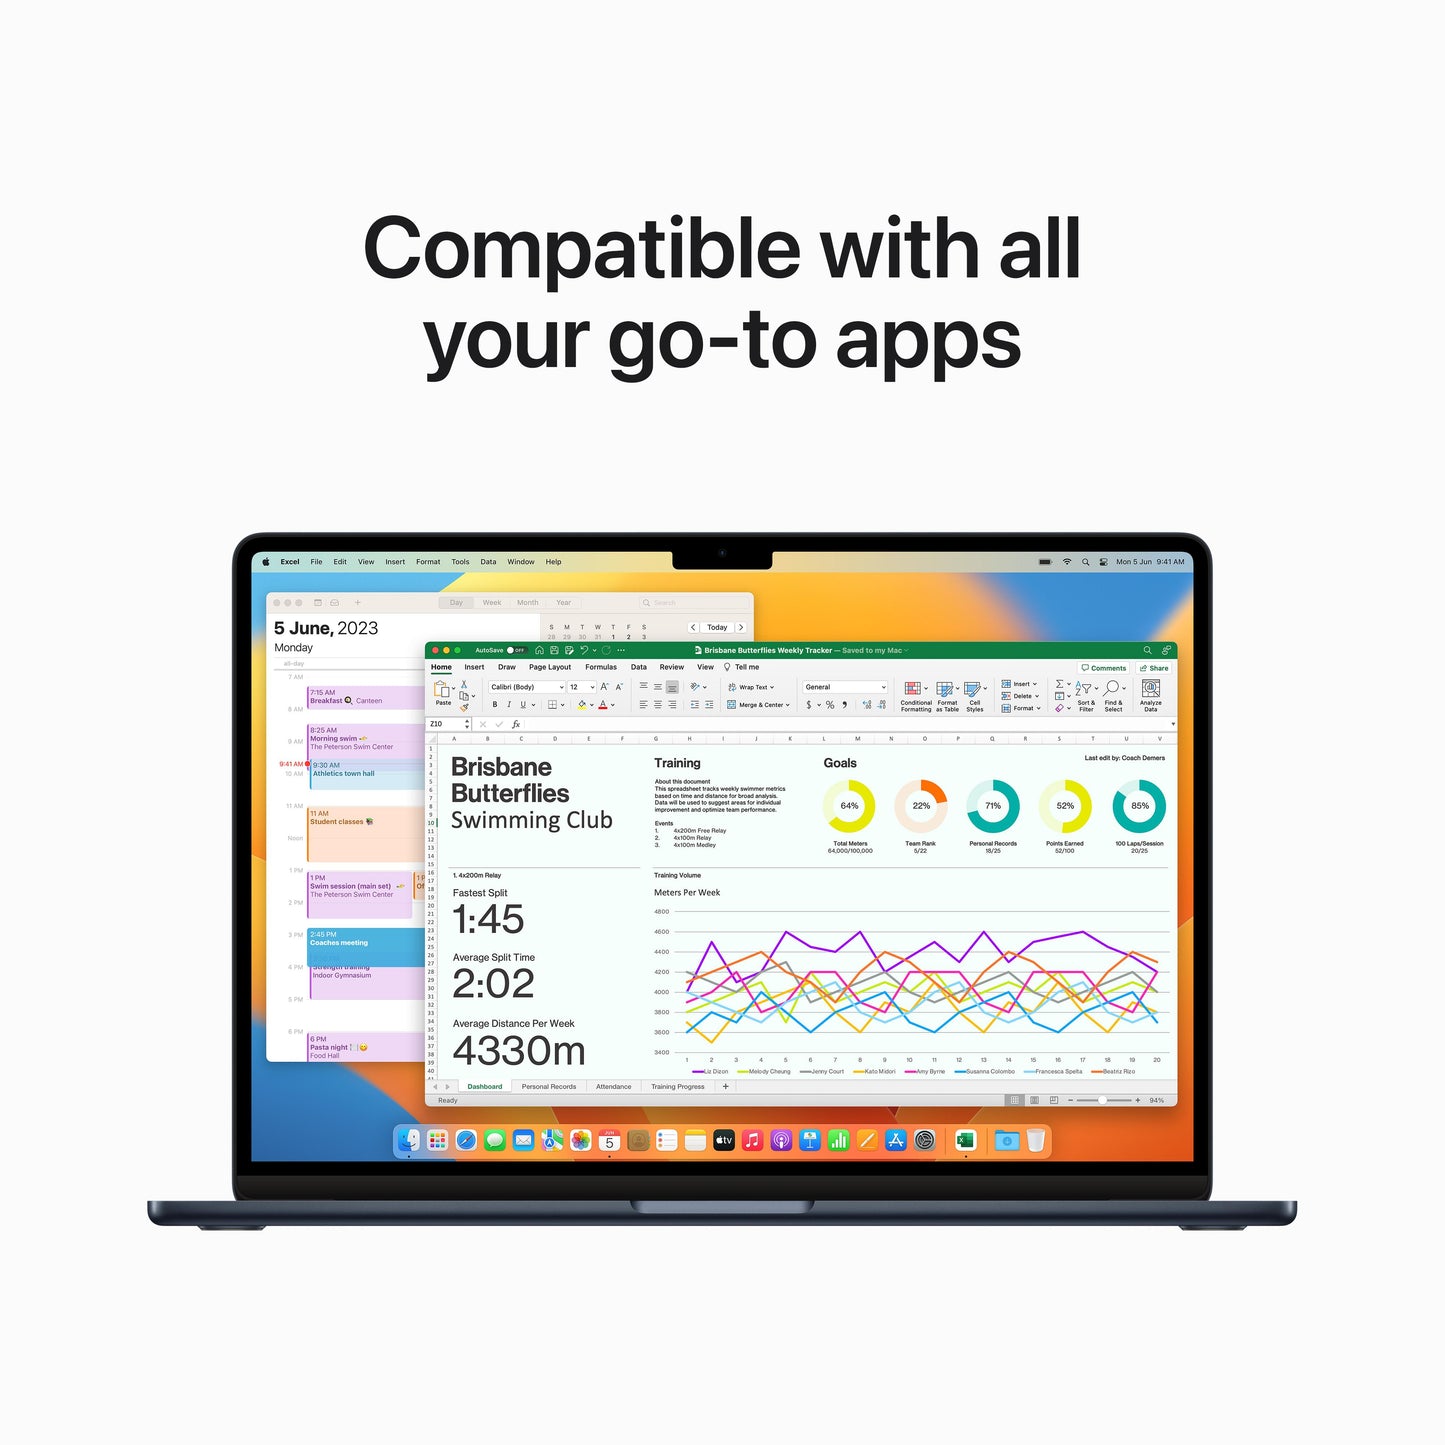 MacBook Air مقاس 15 انش: شريحة Apple M2 مع وحدة المعالجة المركزية 8 نوى ووحدة معالجة الرسومات 10 نوى، 256 جيجابايت SSD - ميدنايت